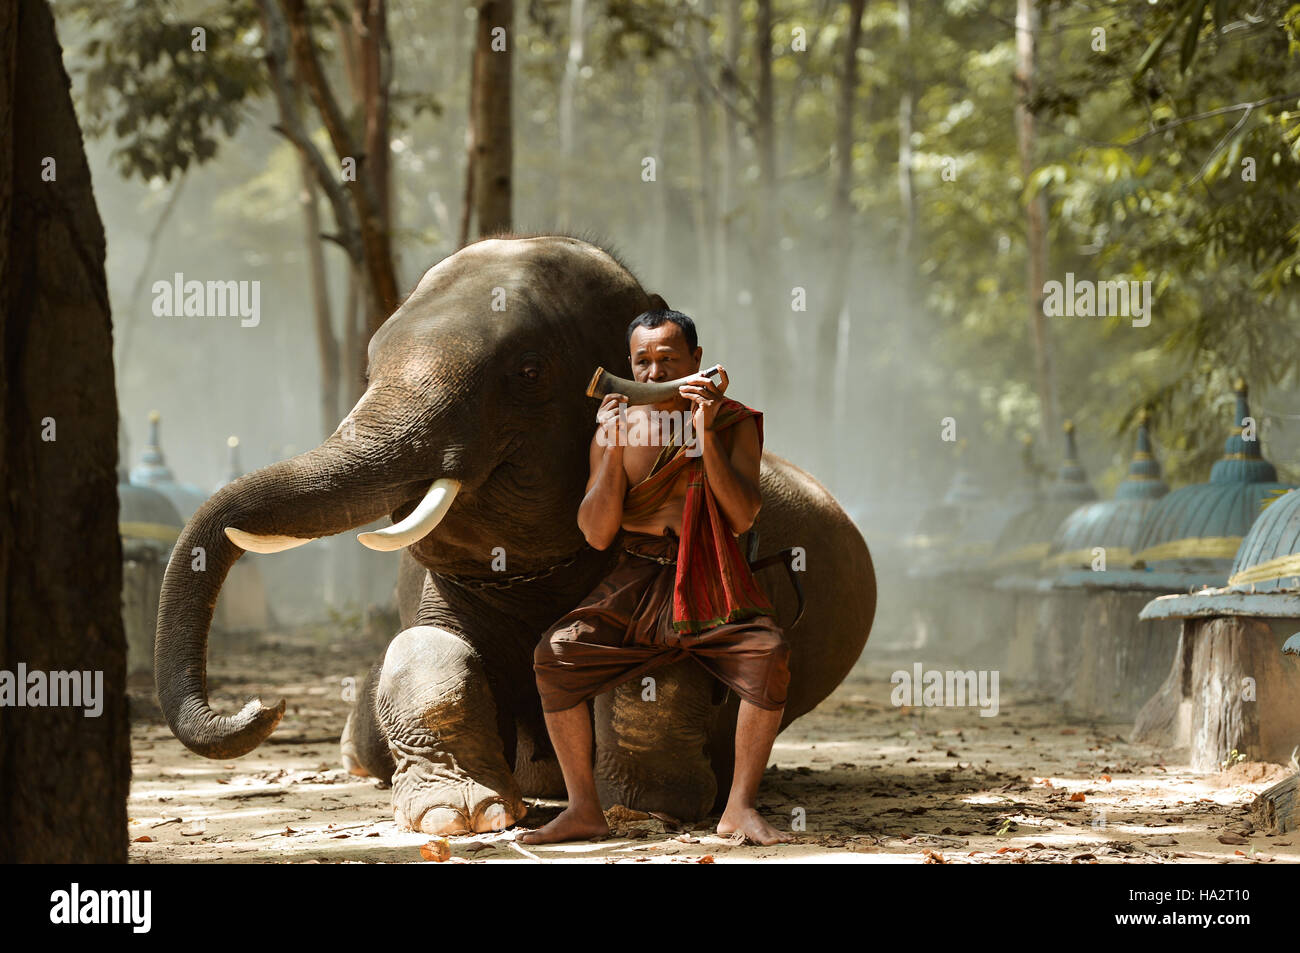 Monk jouer d'un instrument, assis sur un éléphant, Thaïlande Banque D'Images